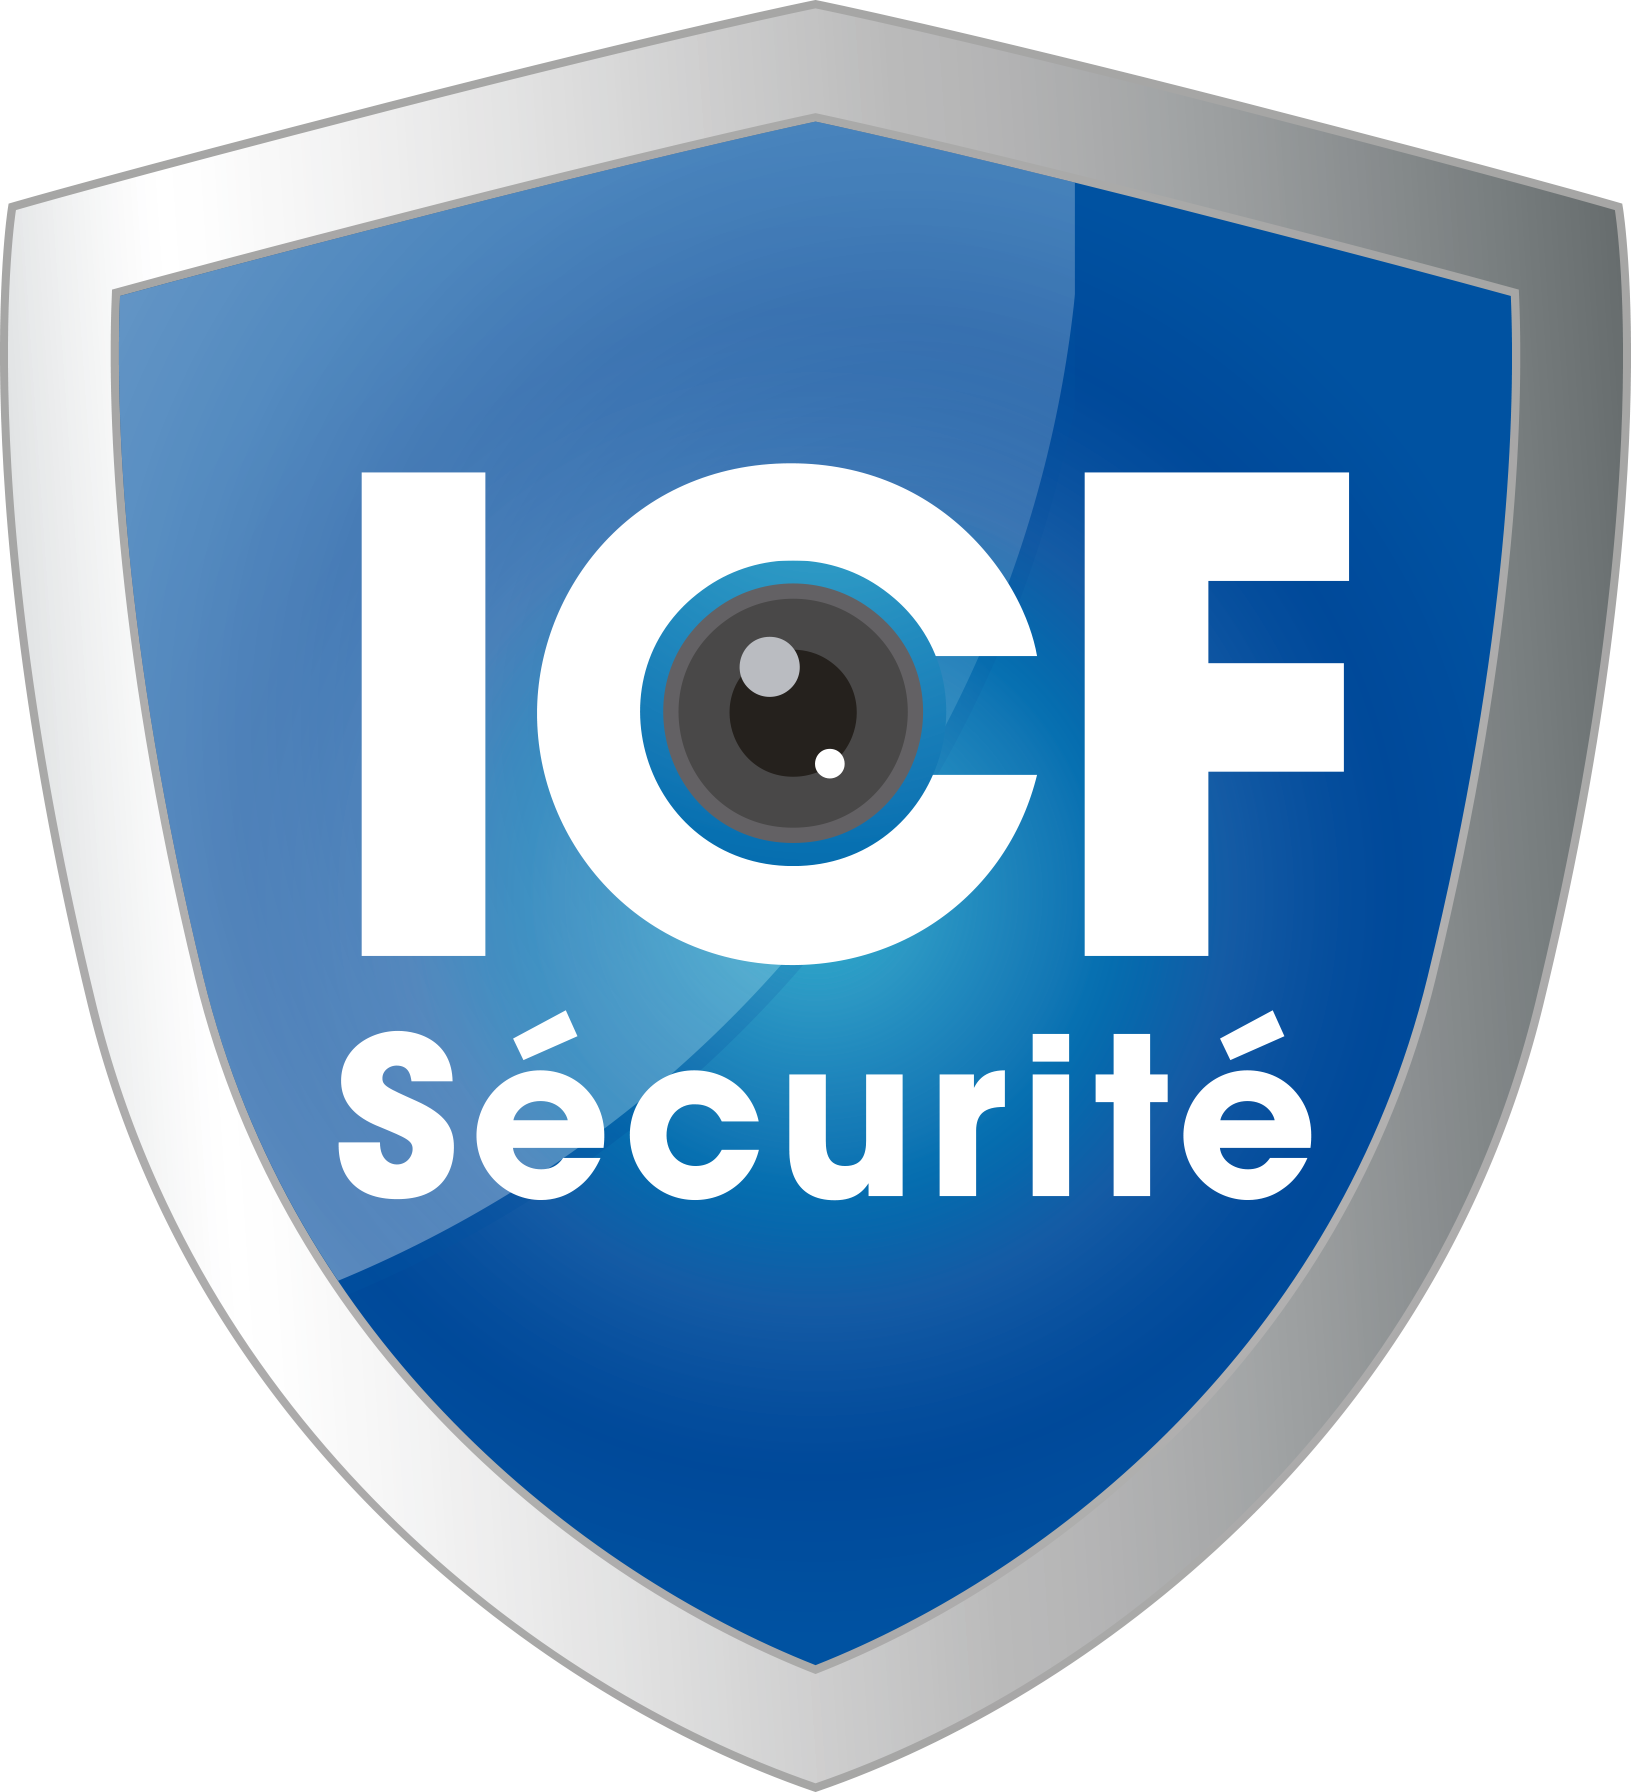 ICF Sécurité